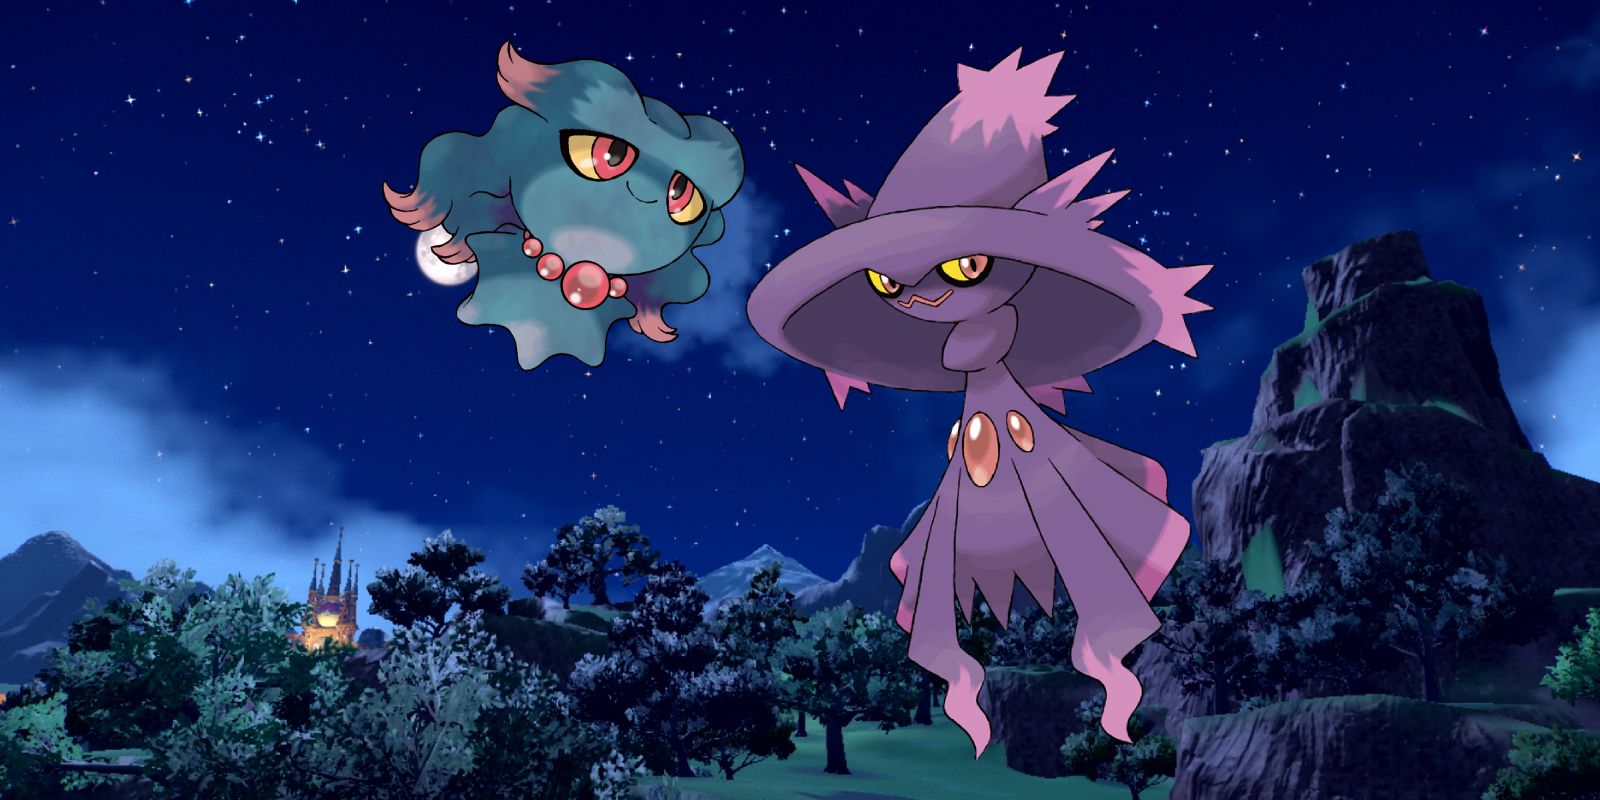 Obras de arte de Misdreavus e Mismagius sobrepostas sobre uma paisagem noturna de Pokémon Scarlet e Violet, com uma montanha de um lado e um prédio iluminado no escuro do outro.